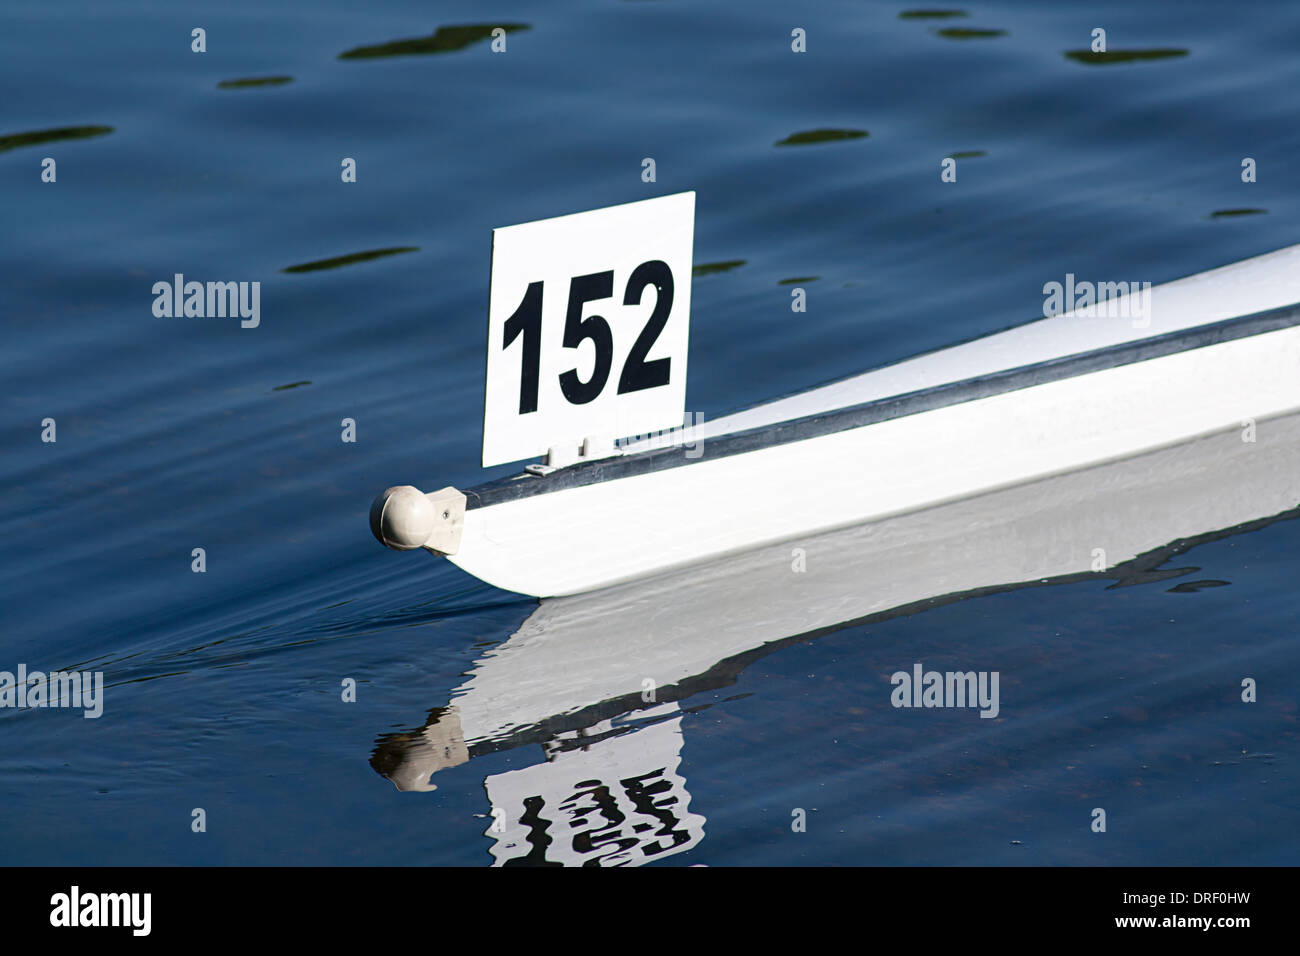 Bateau de course shell dans une course d'aviron de compétition Banque D'Images